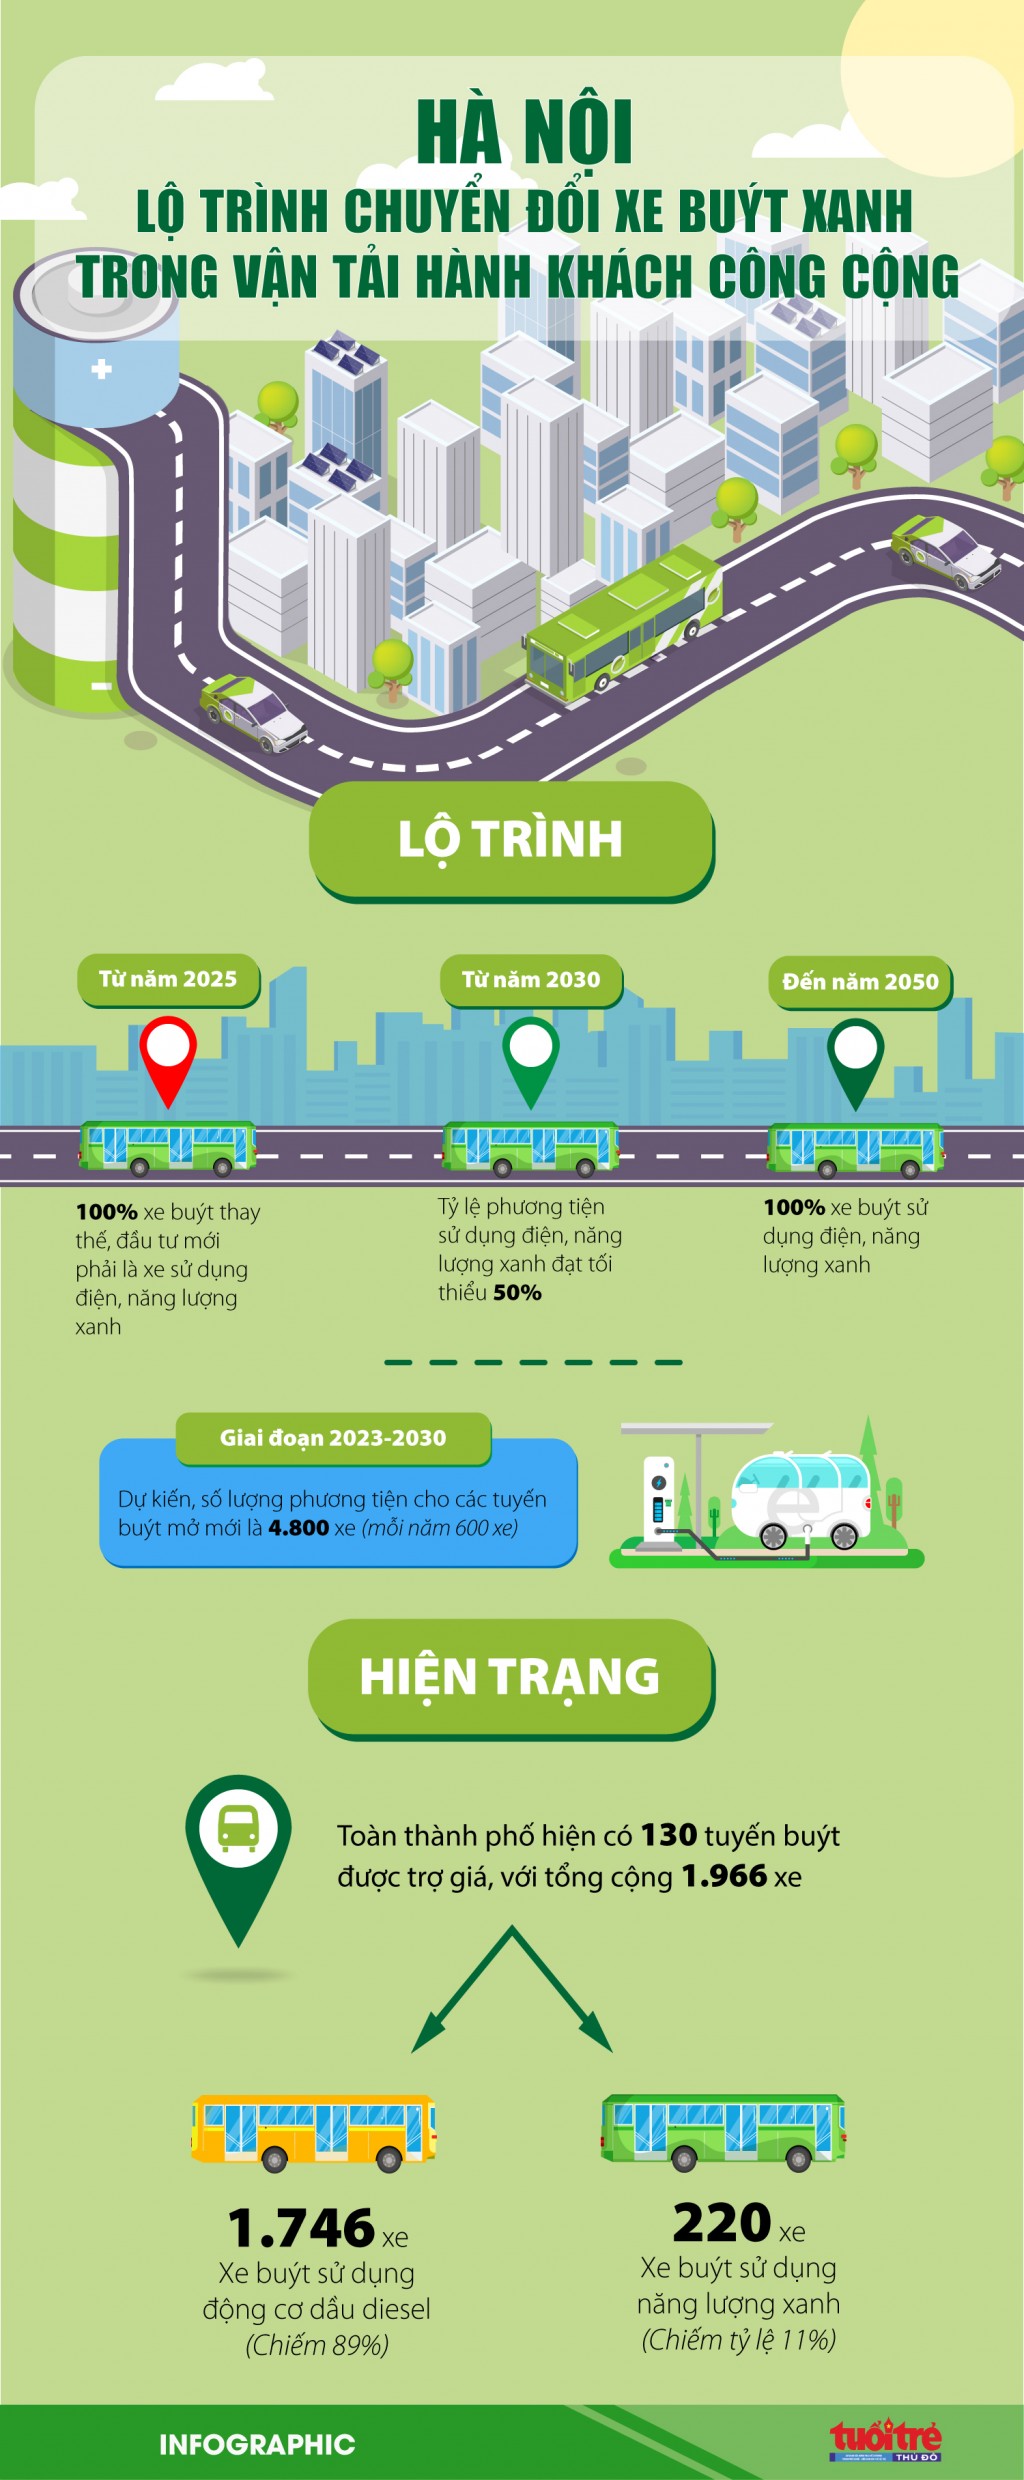 Hà Nội: lộ trình chuyển đổi xe buýt xanh trong vận tải hành khách công cộng